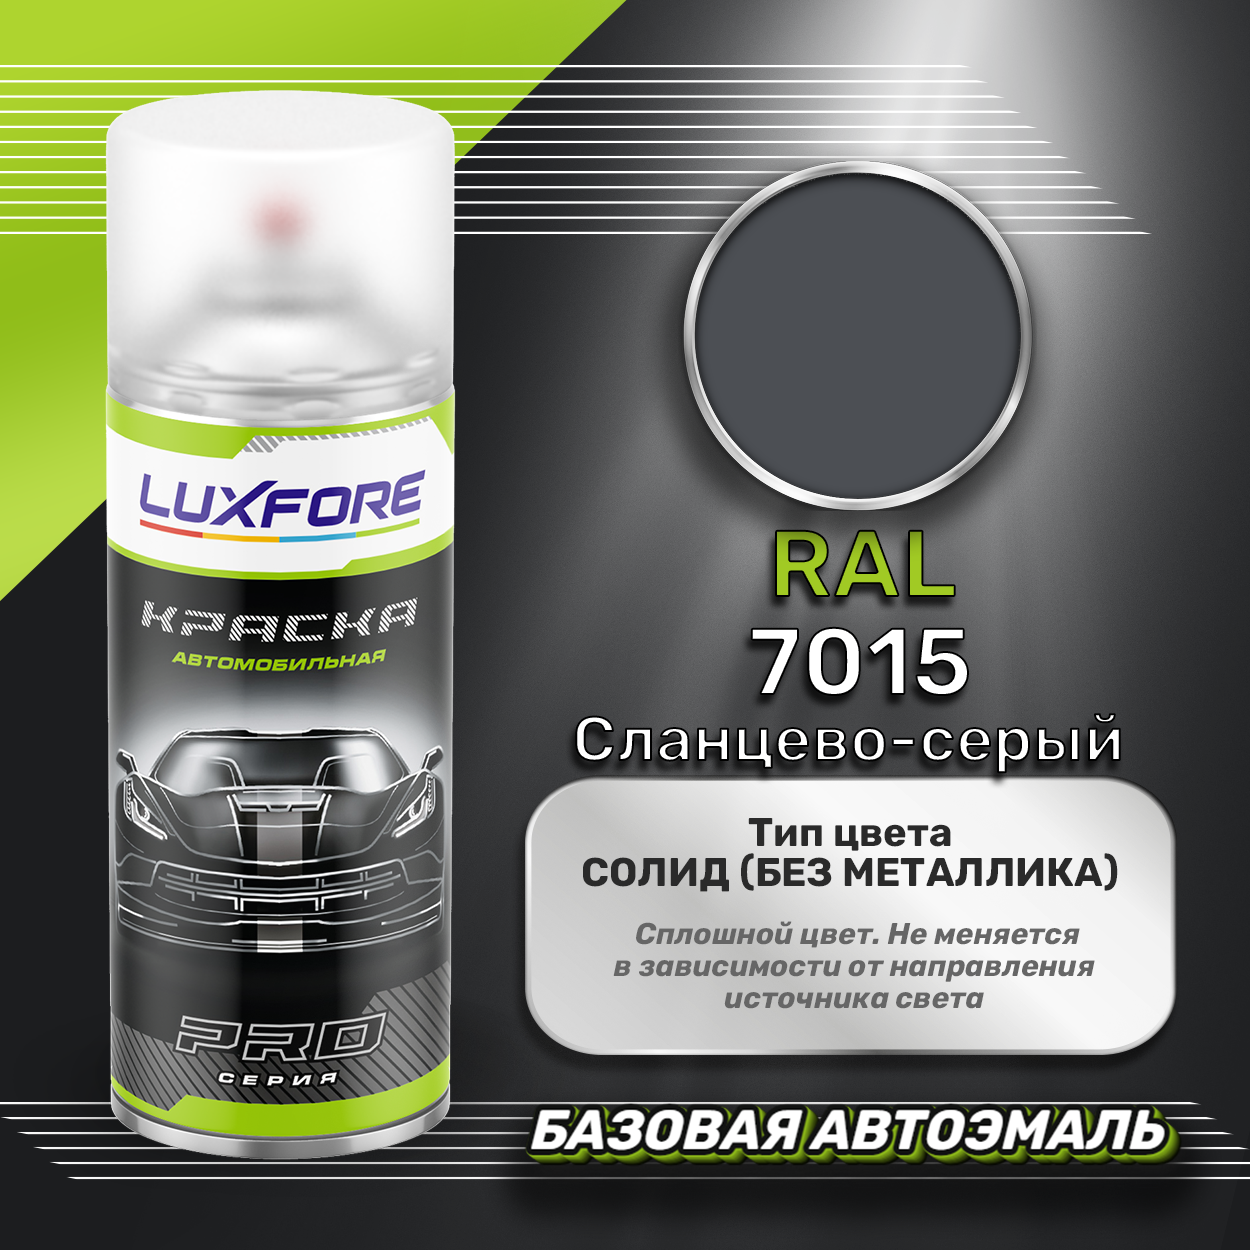 Luxfore аэрозольная краска RAL 7015 Сланцево-серый 400 мл